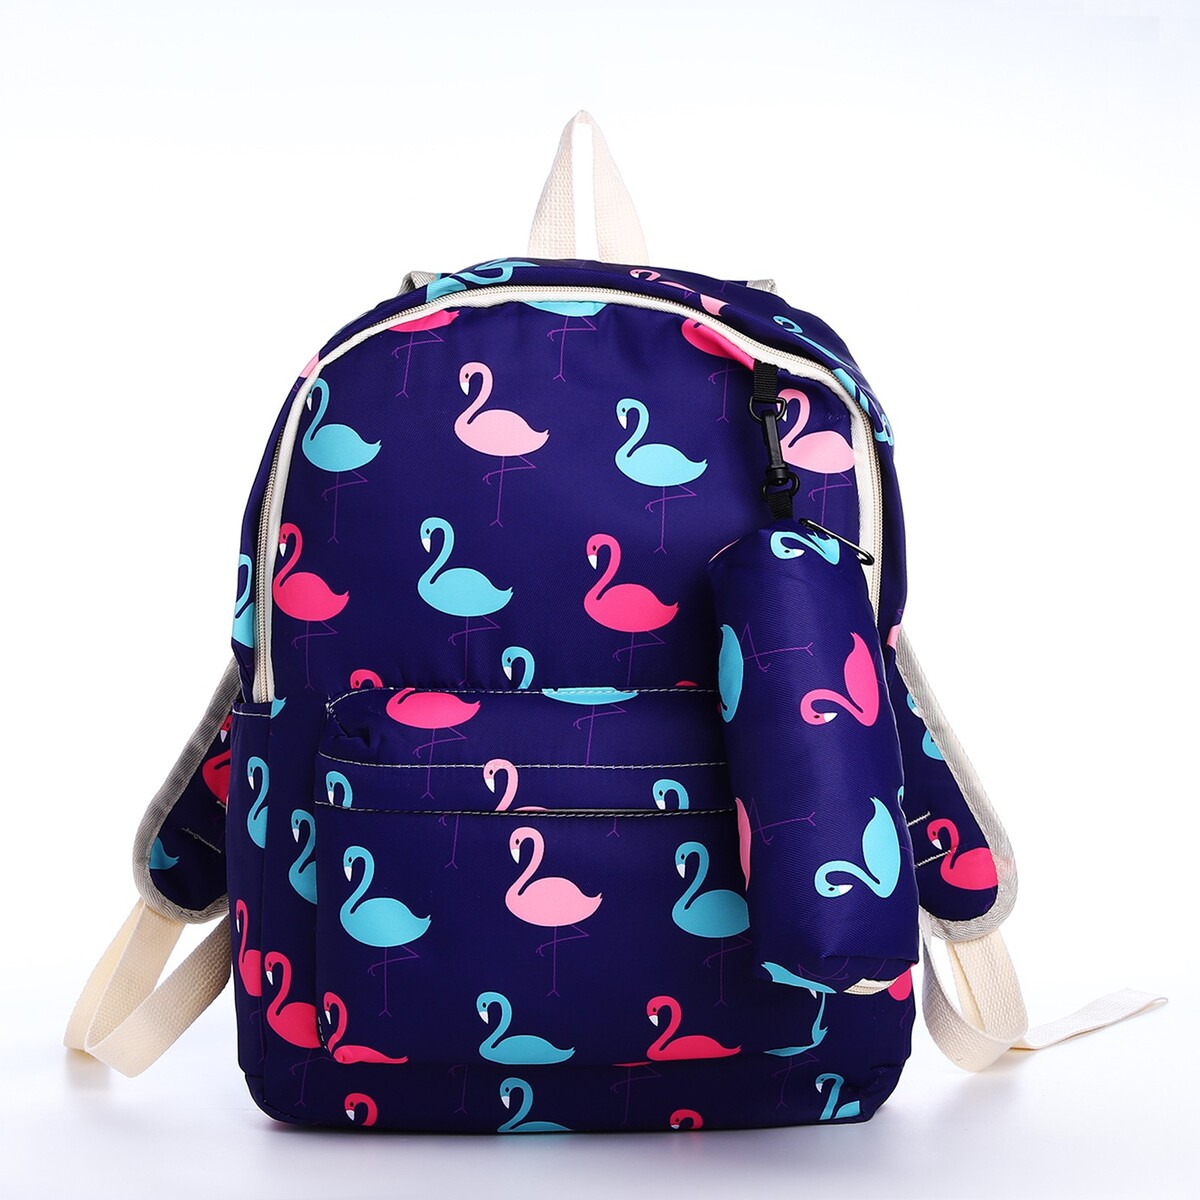 Рюкзак школьный из текстиля на молнии, 3 кармана, пенал, цвет фиолетовый рюкзак на молнии фиолетовый